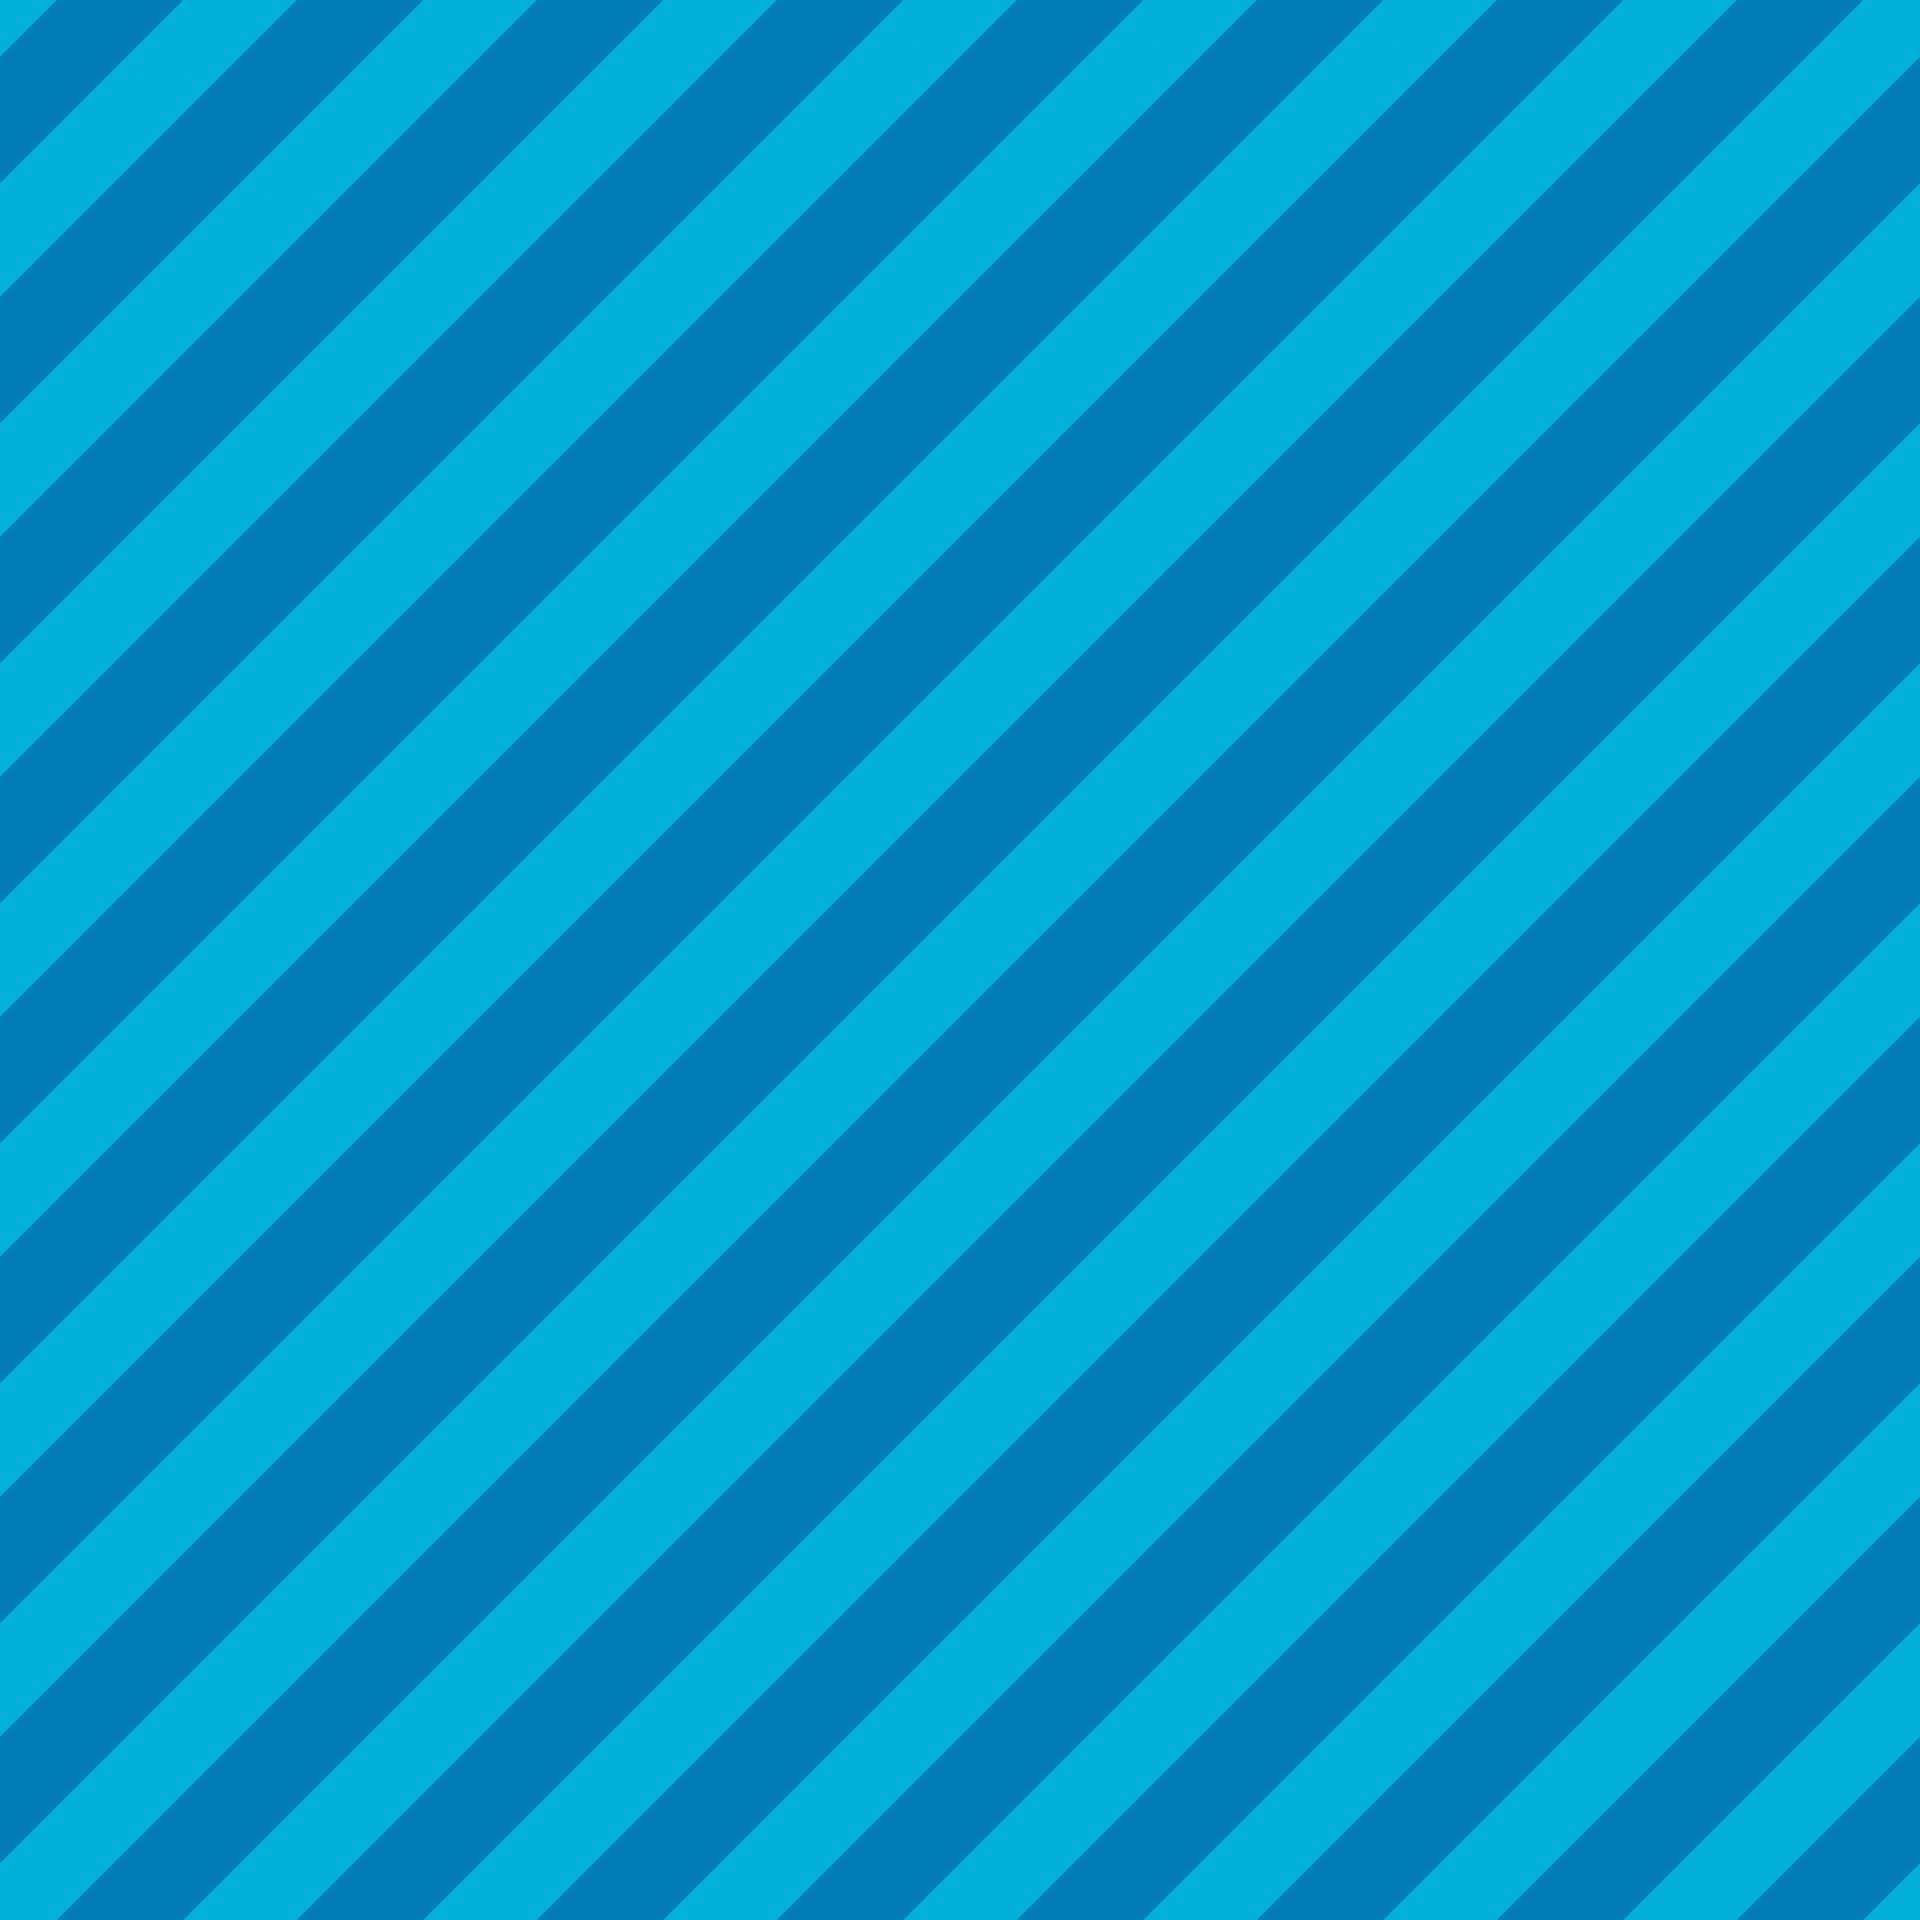 Pruhy modré diagonální pozadí